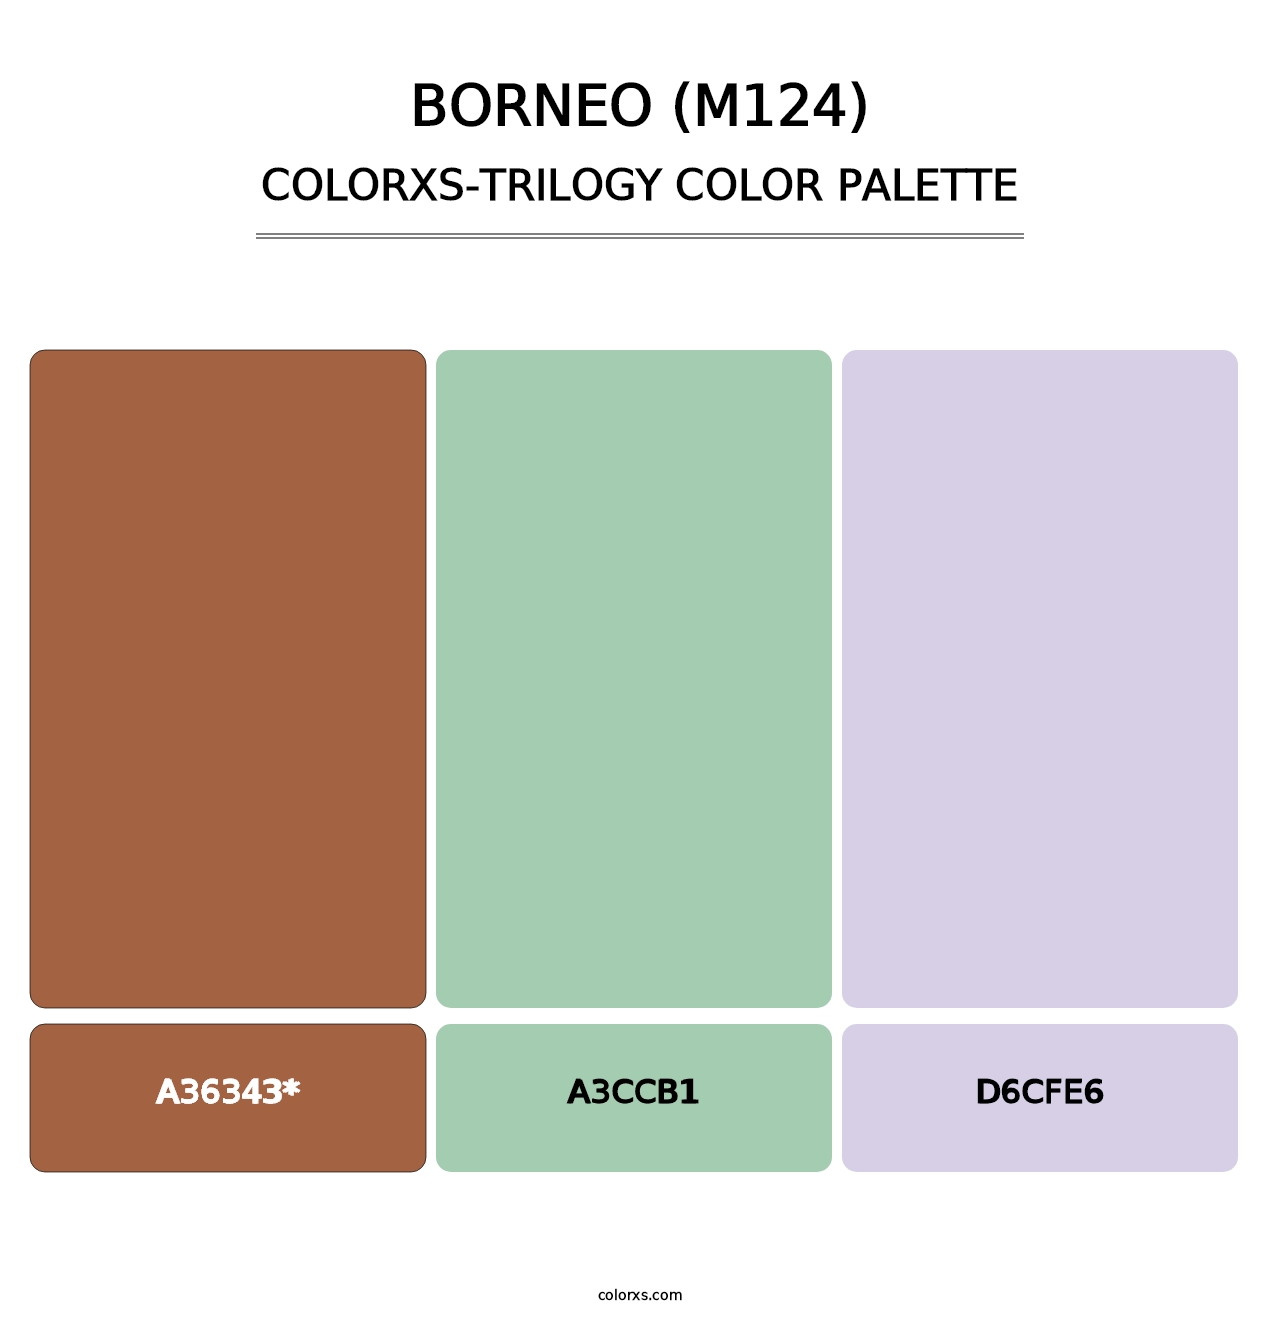 Borneo (M124) - Colorxs Trilogy Palette